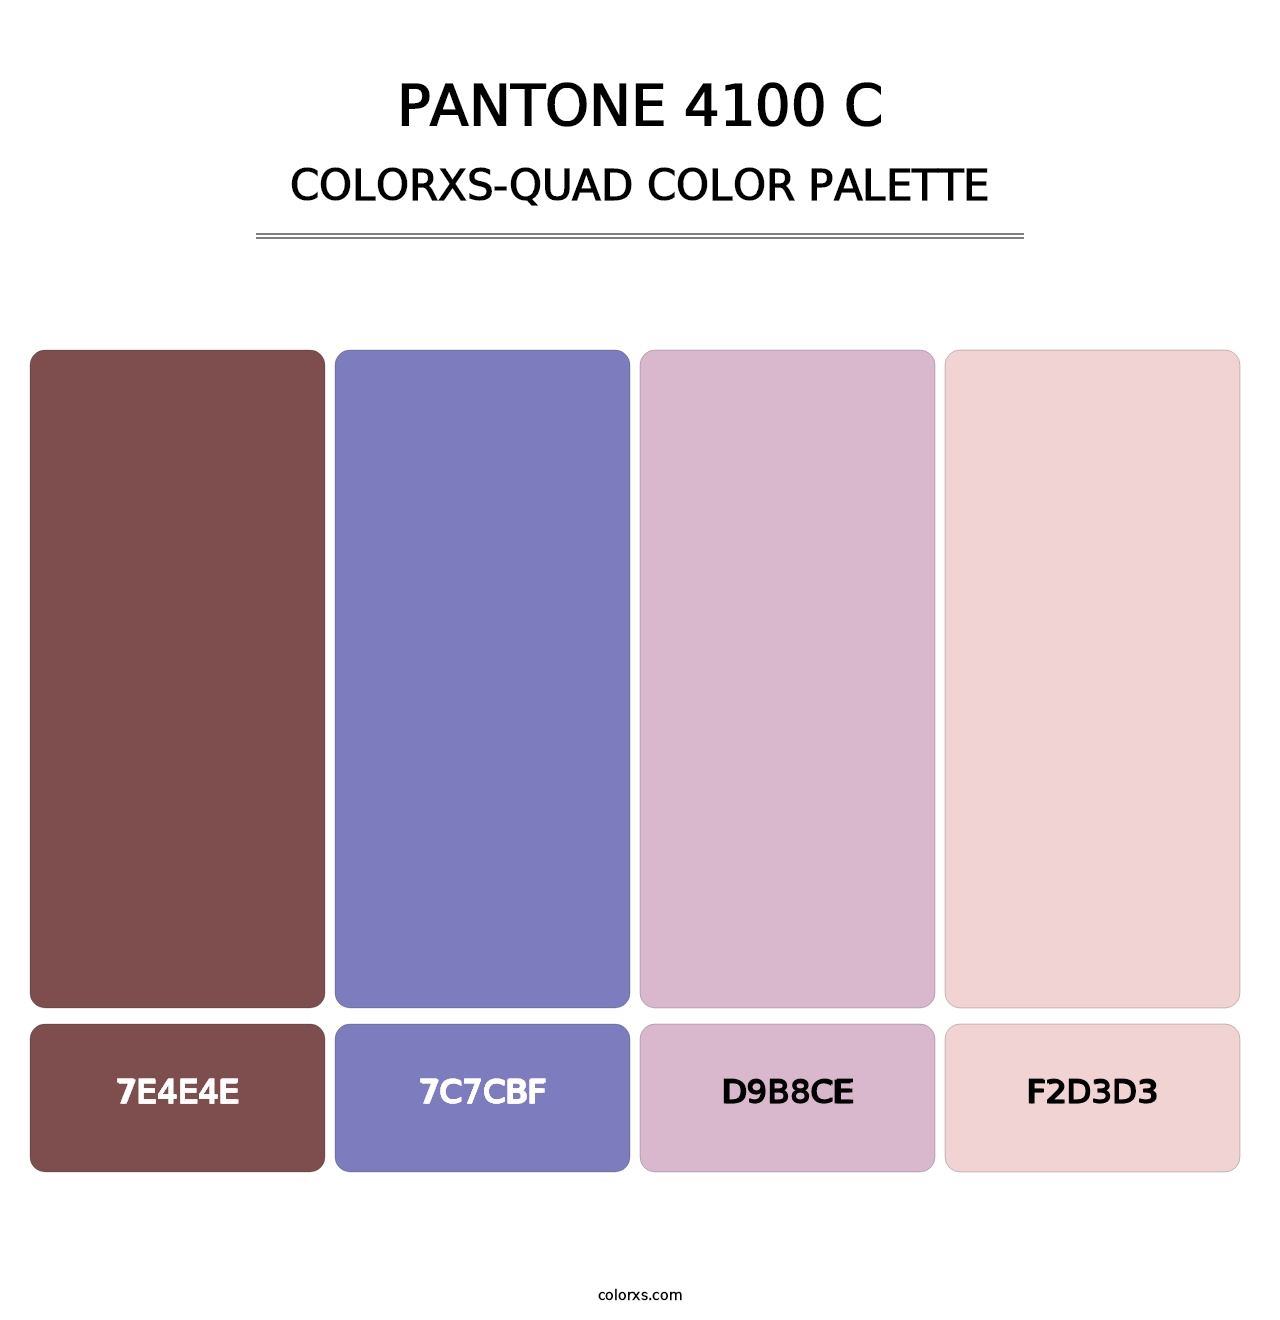 PANTONE 4100 C - Colorxs Quad Palette